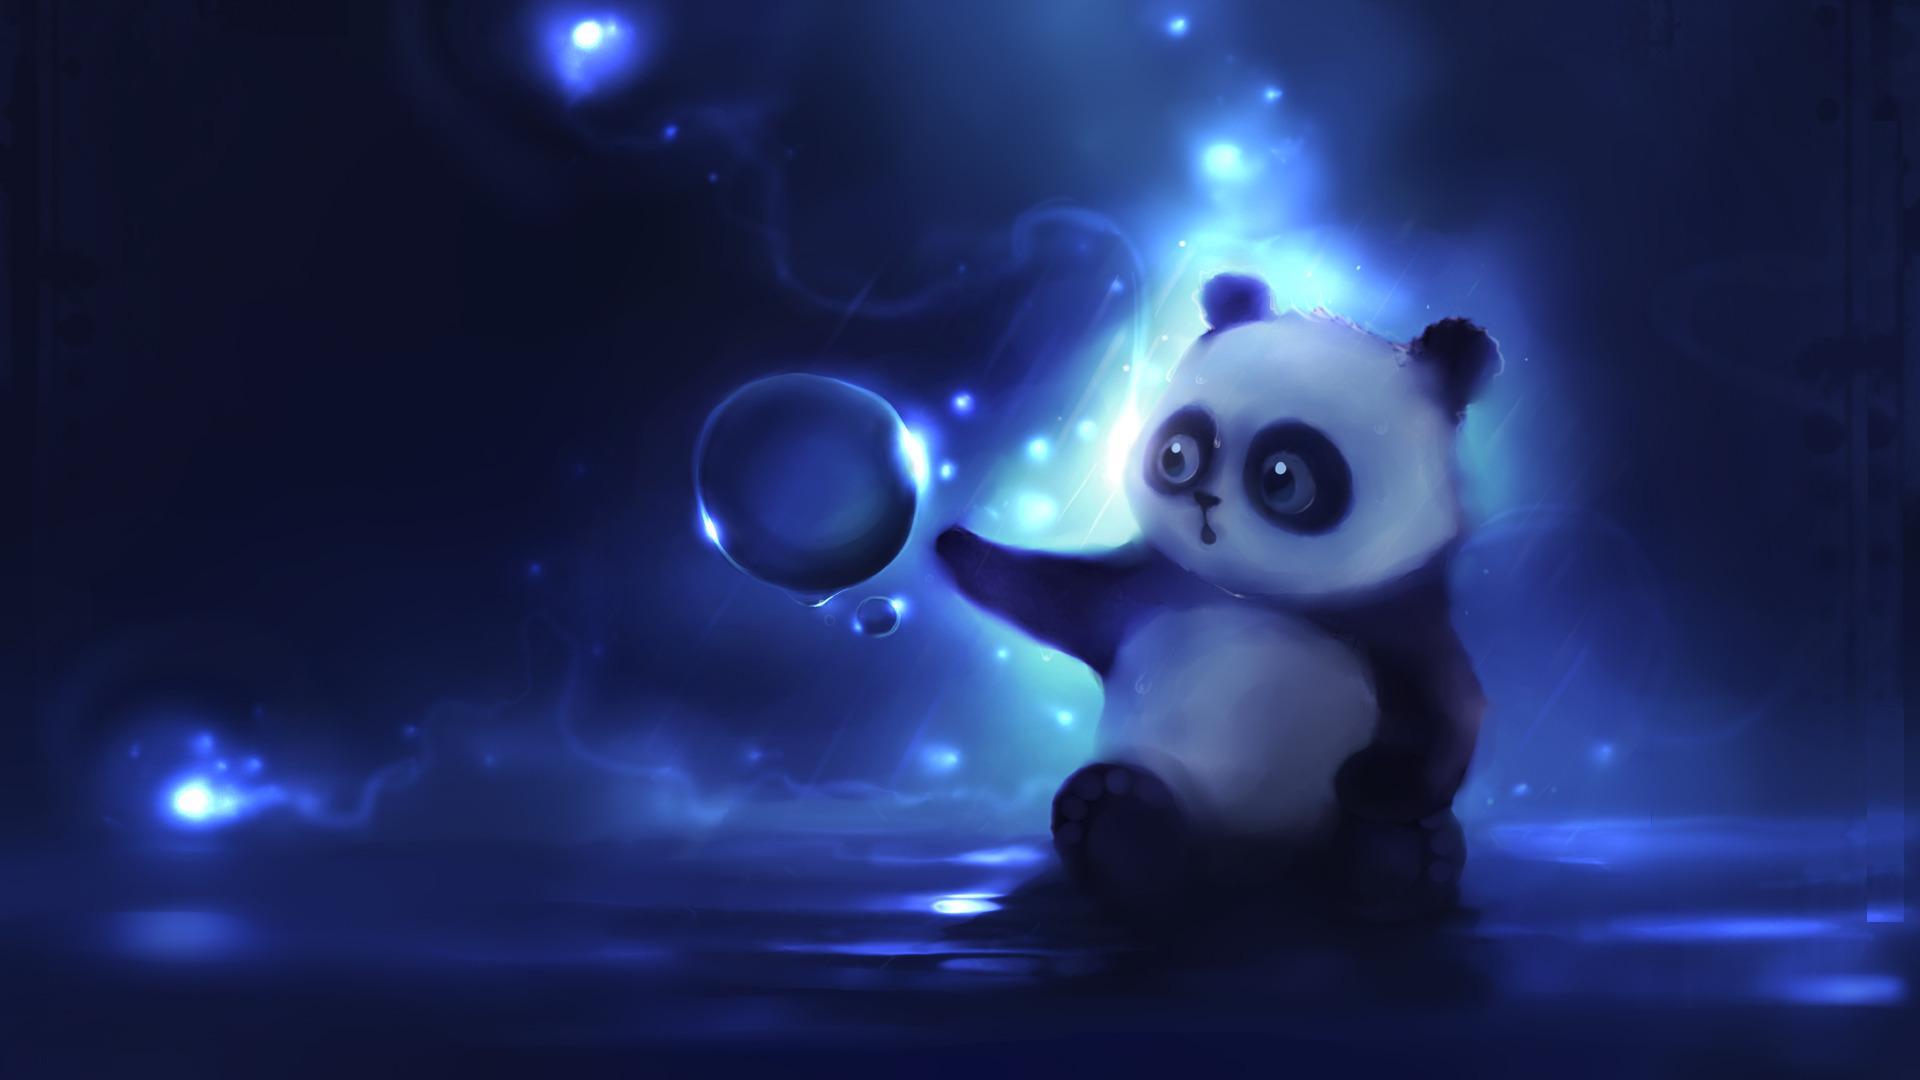 cute animated panda download beautiful animated desktop wallpapers